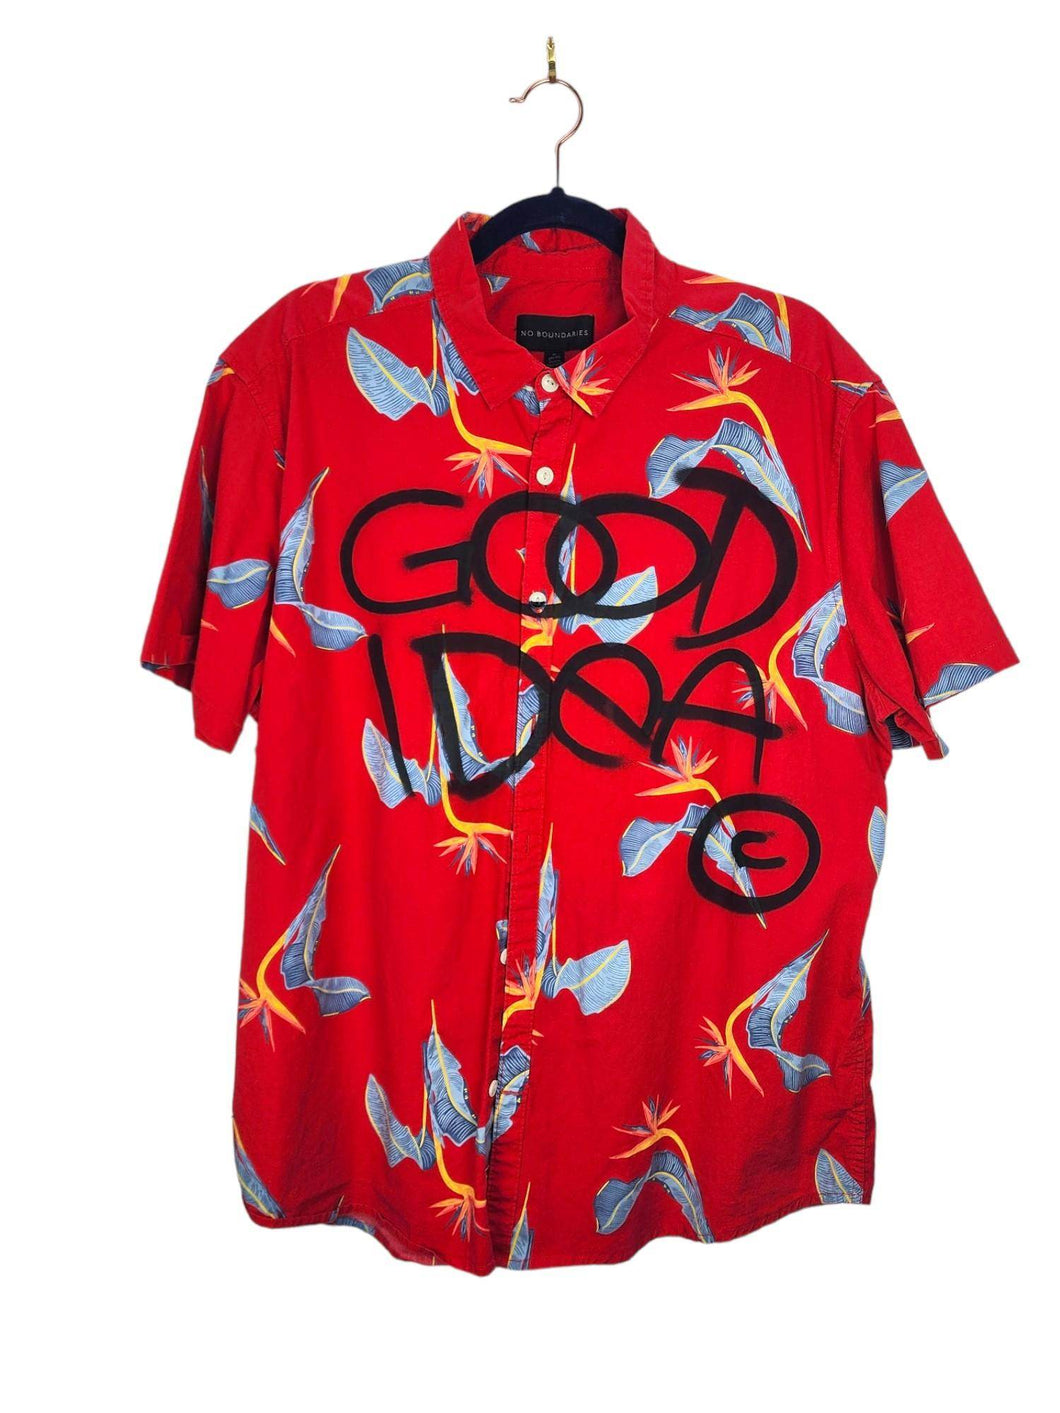 GOOD IDEA Hawaiian Style Shirt in Red